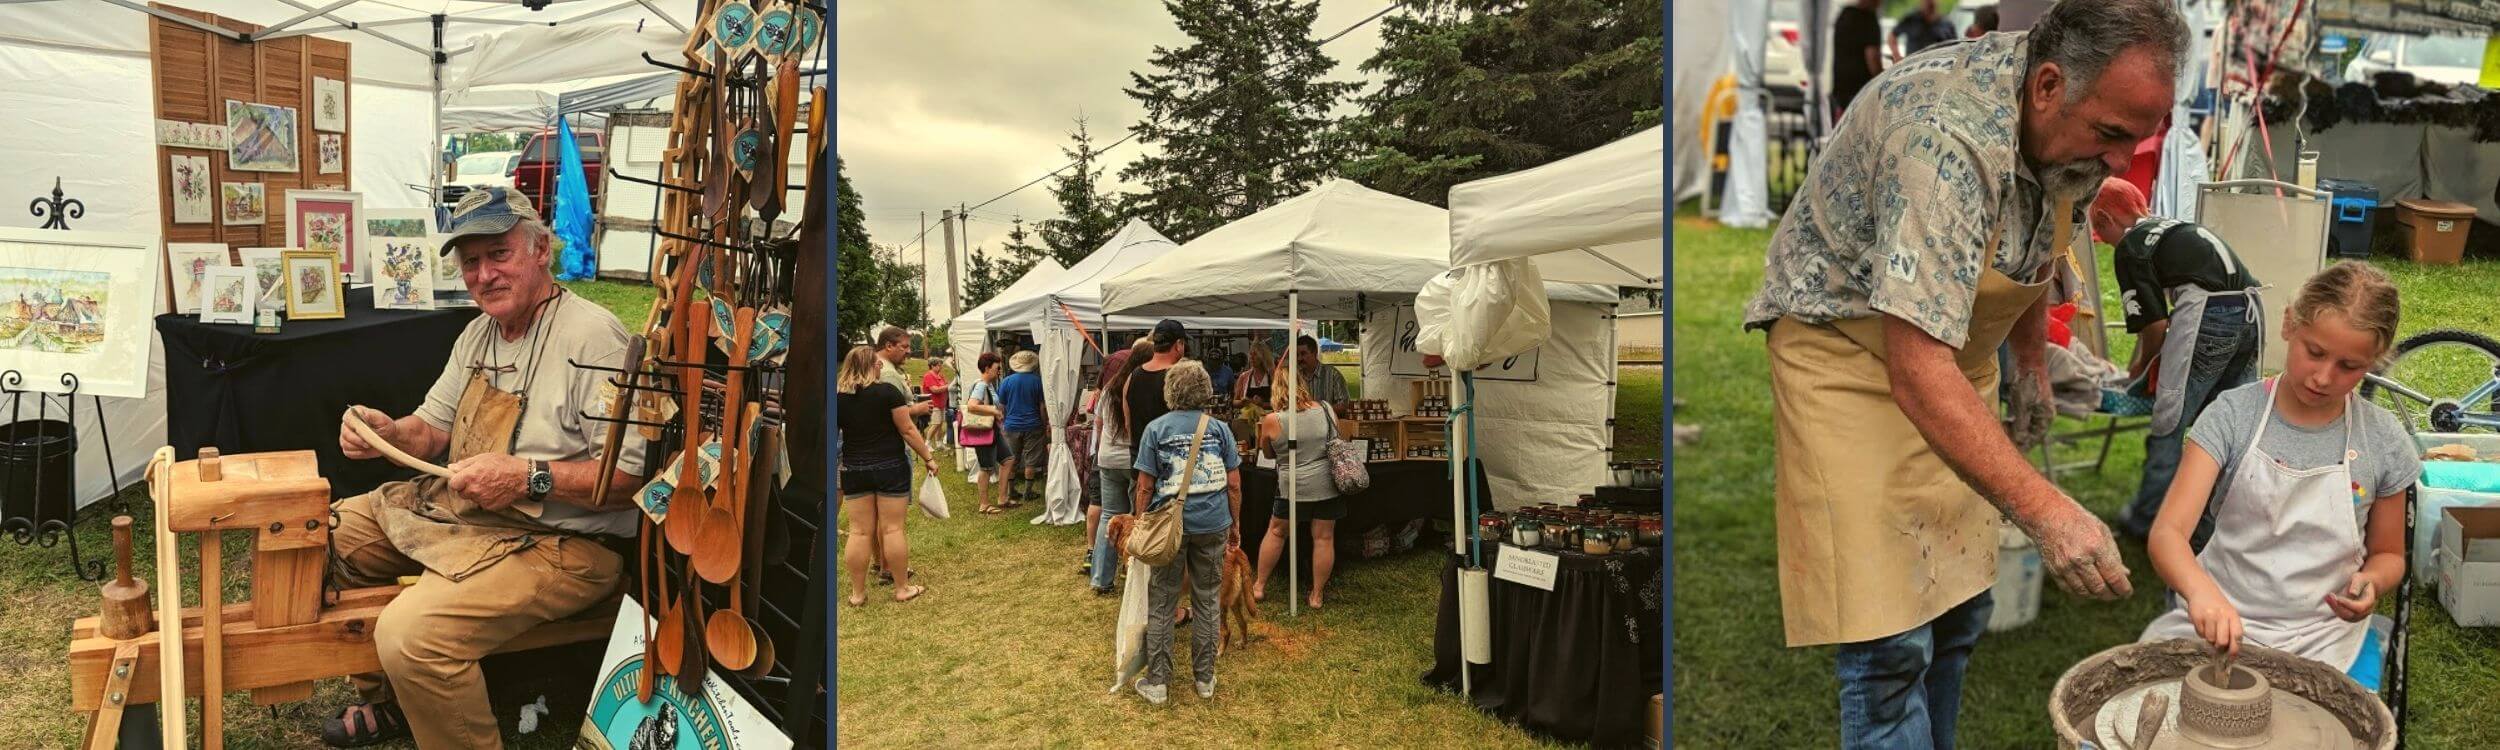 arts and craft show vendors